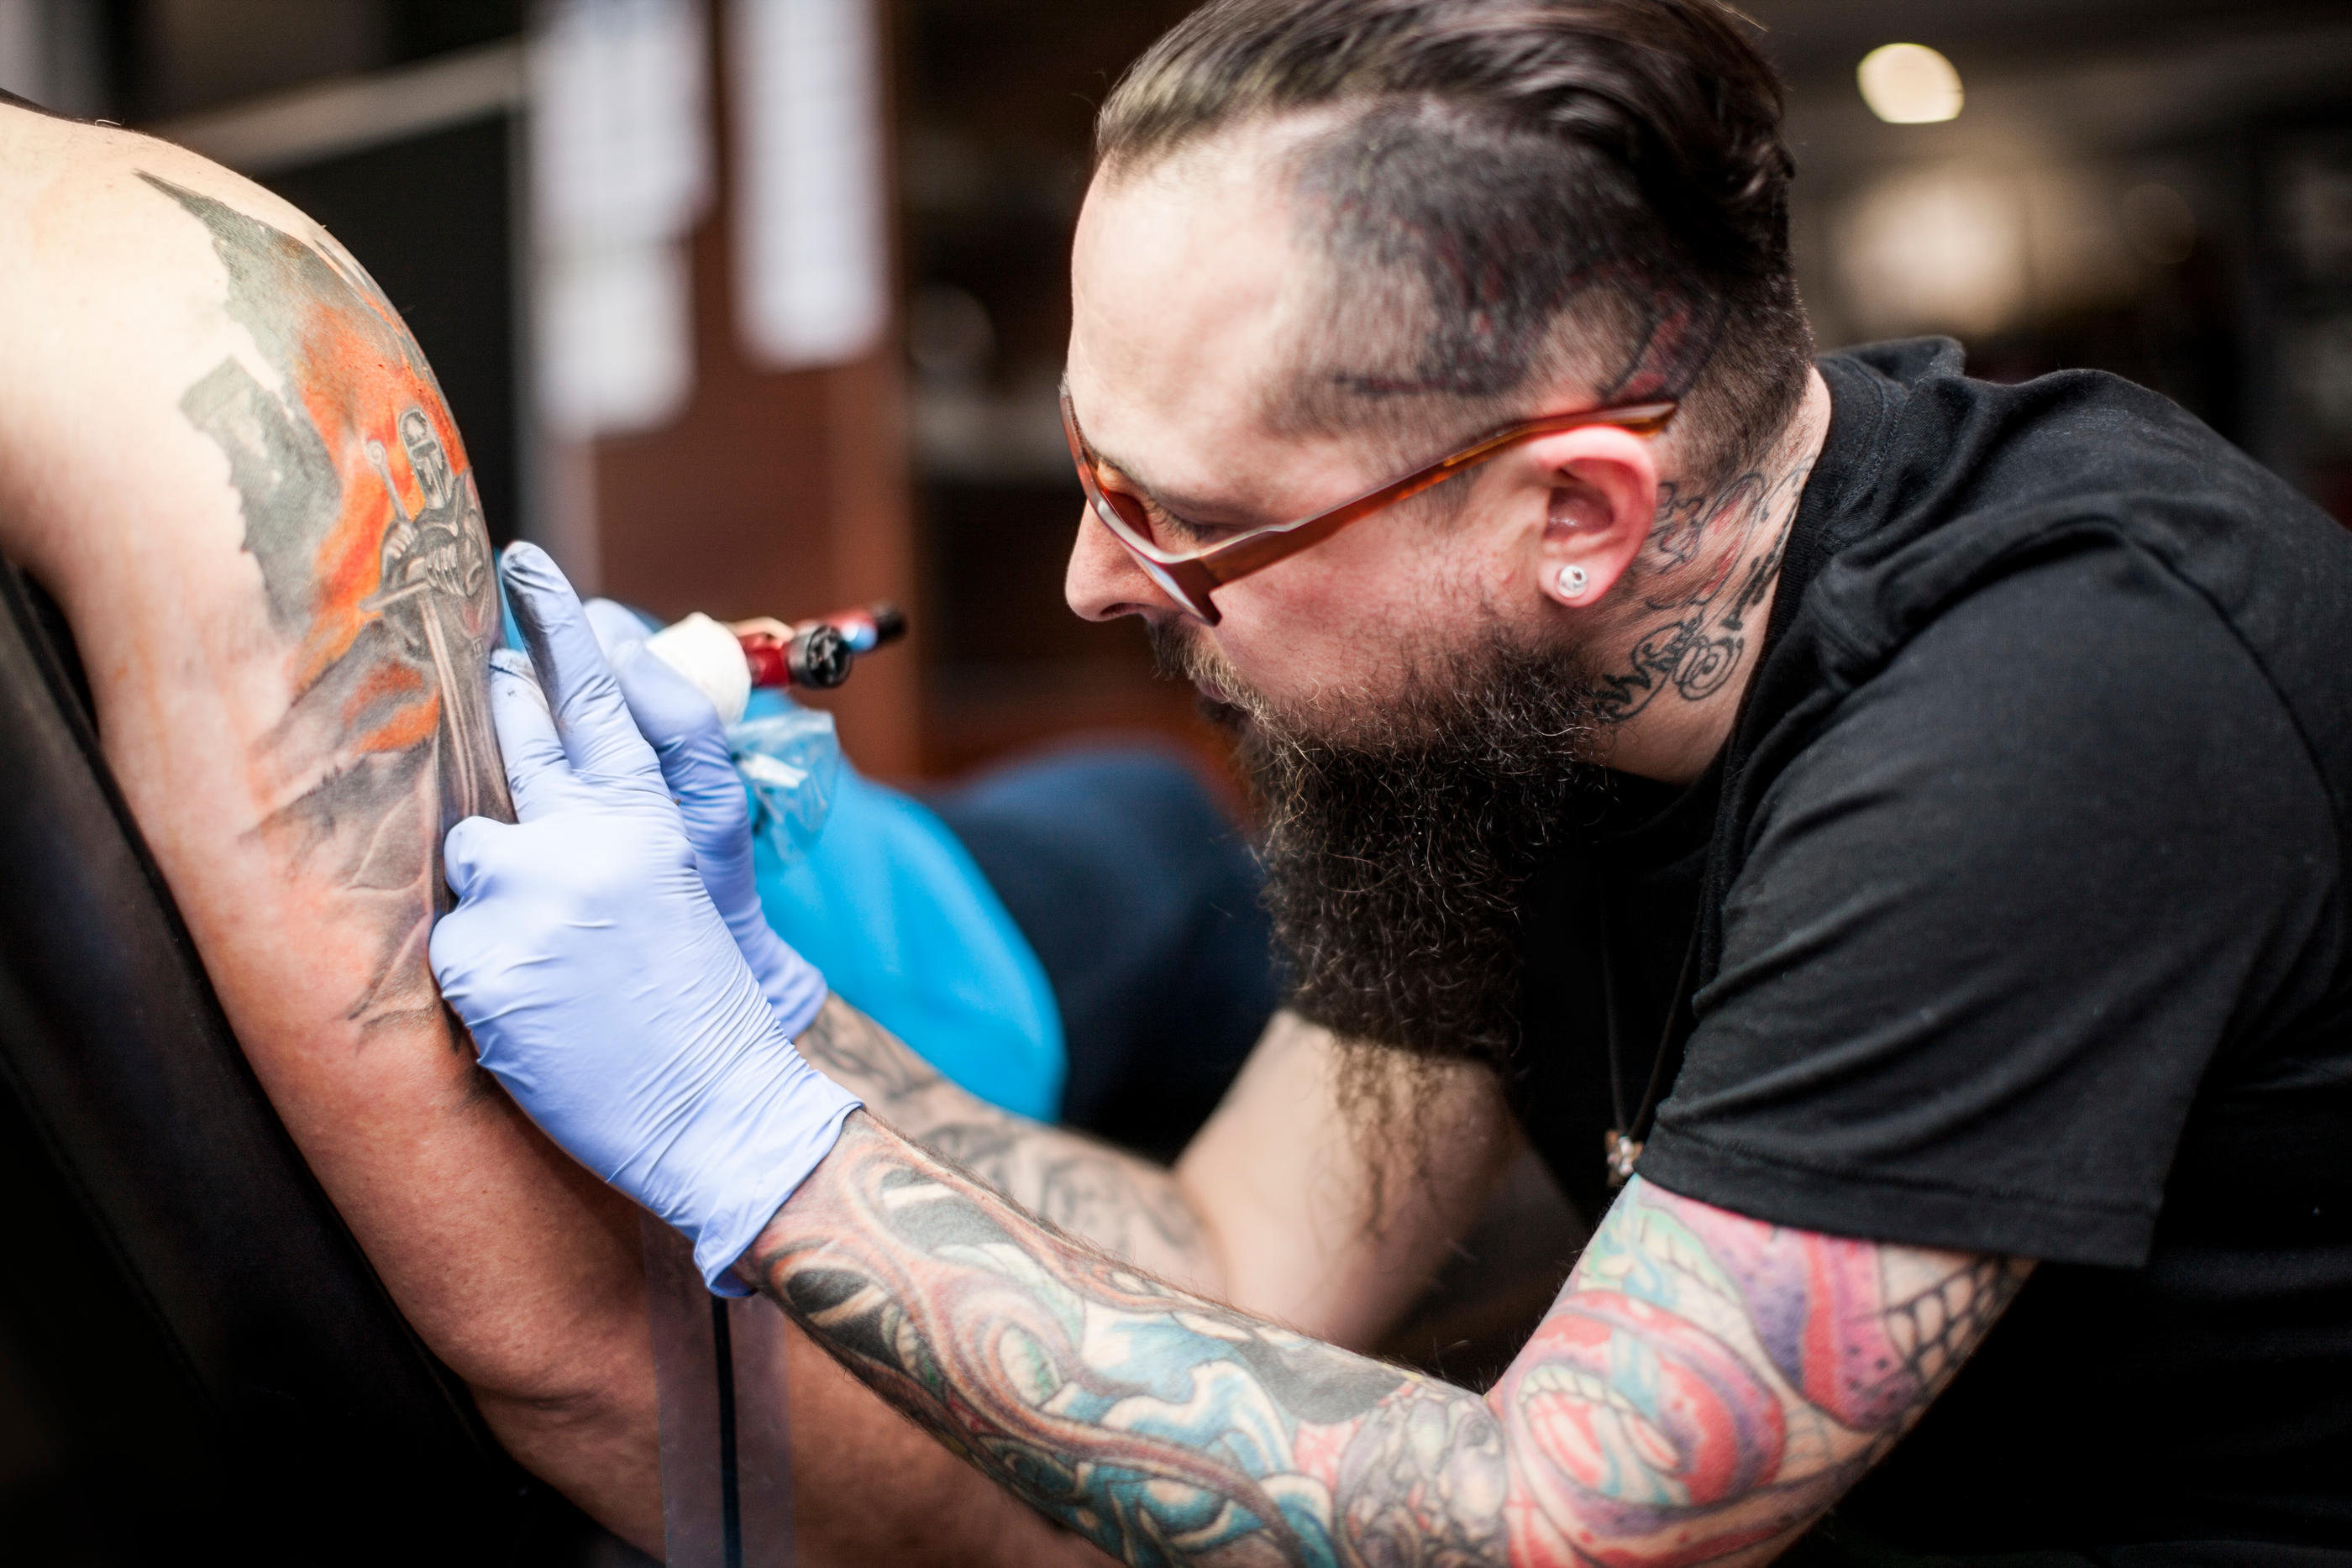 Le risque d’infection a considérablement diminué depuis que la formation à l’hygiène et aux règles d’asepsie est obligatoire pour tous les tatoueurs officiels et déclarés comme tels. Istock